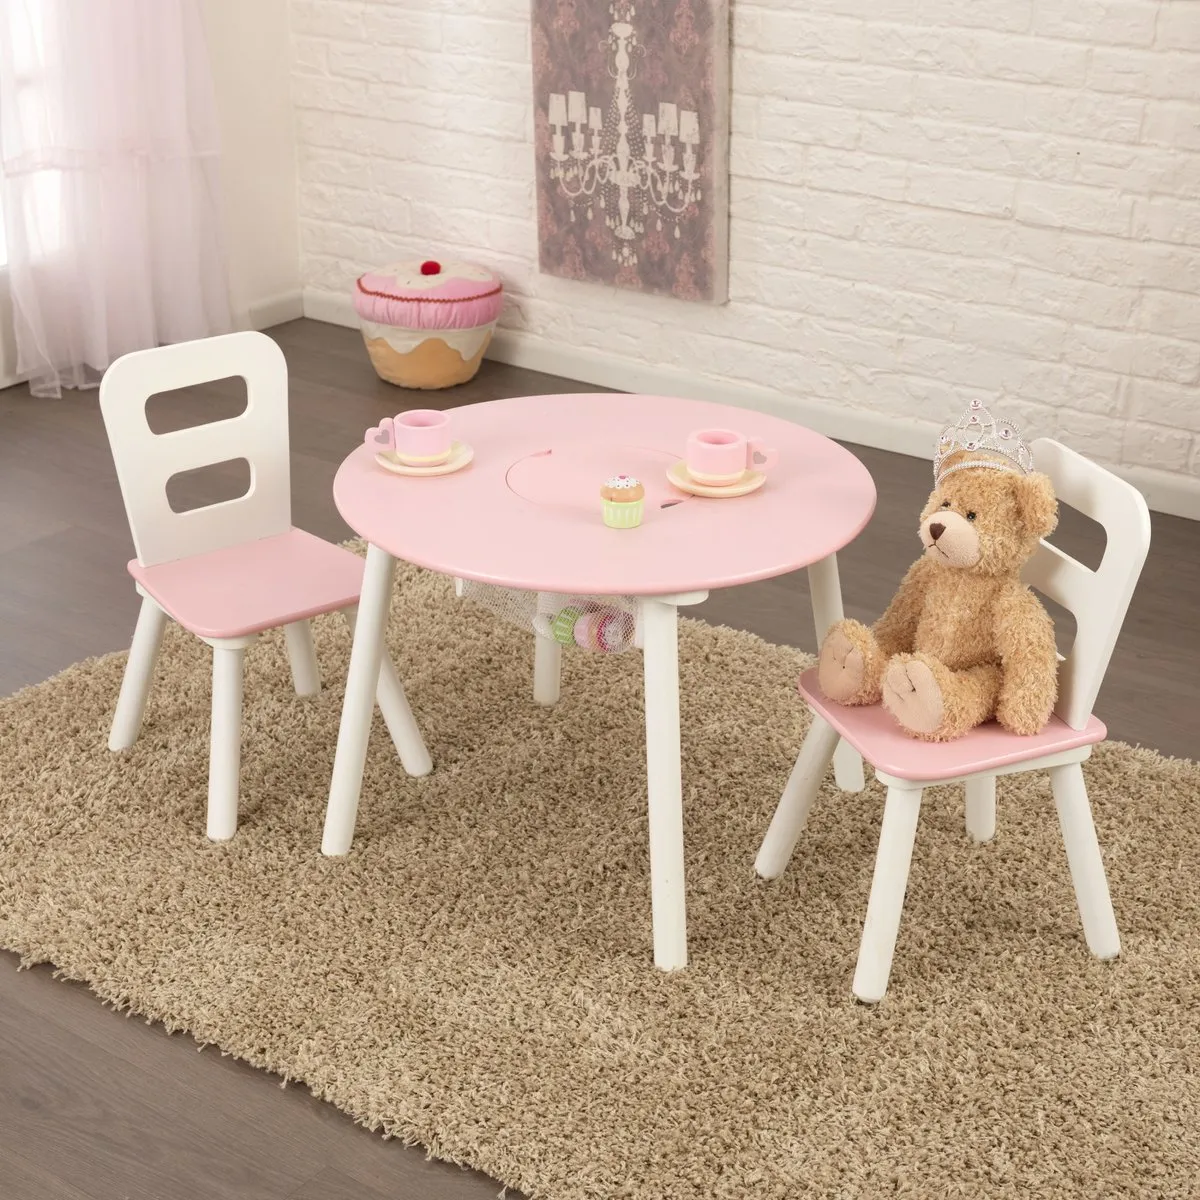 Kinder meubelset (Roze) - Kidkraft (26165) speelgoed